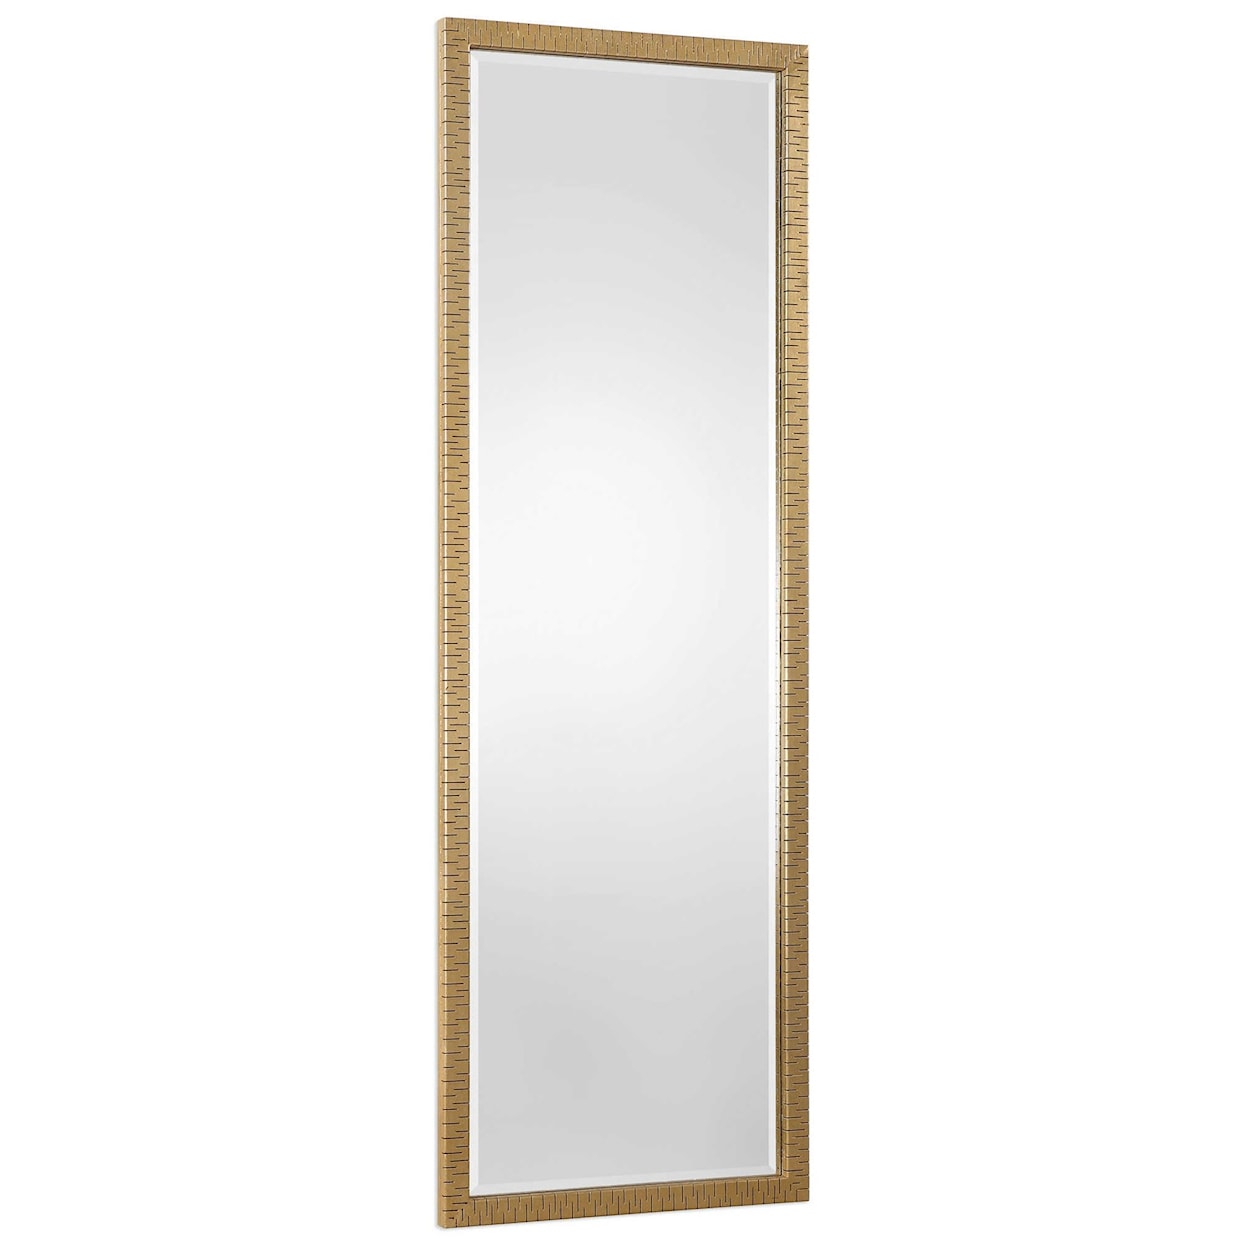 Uttermost Mirrors Vilmos Metallic Gold Mirror